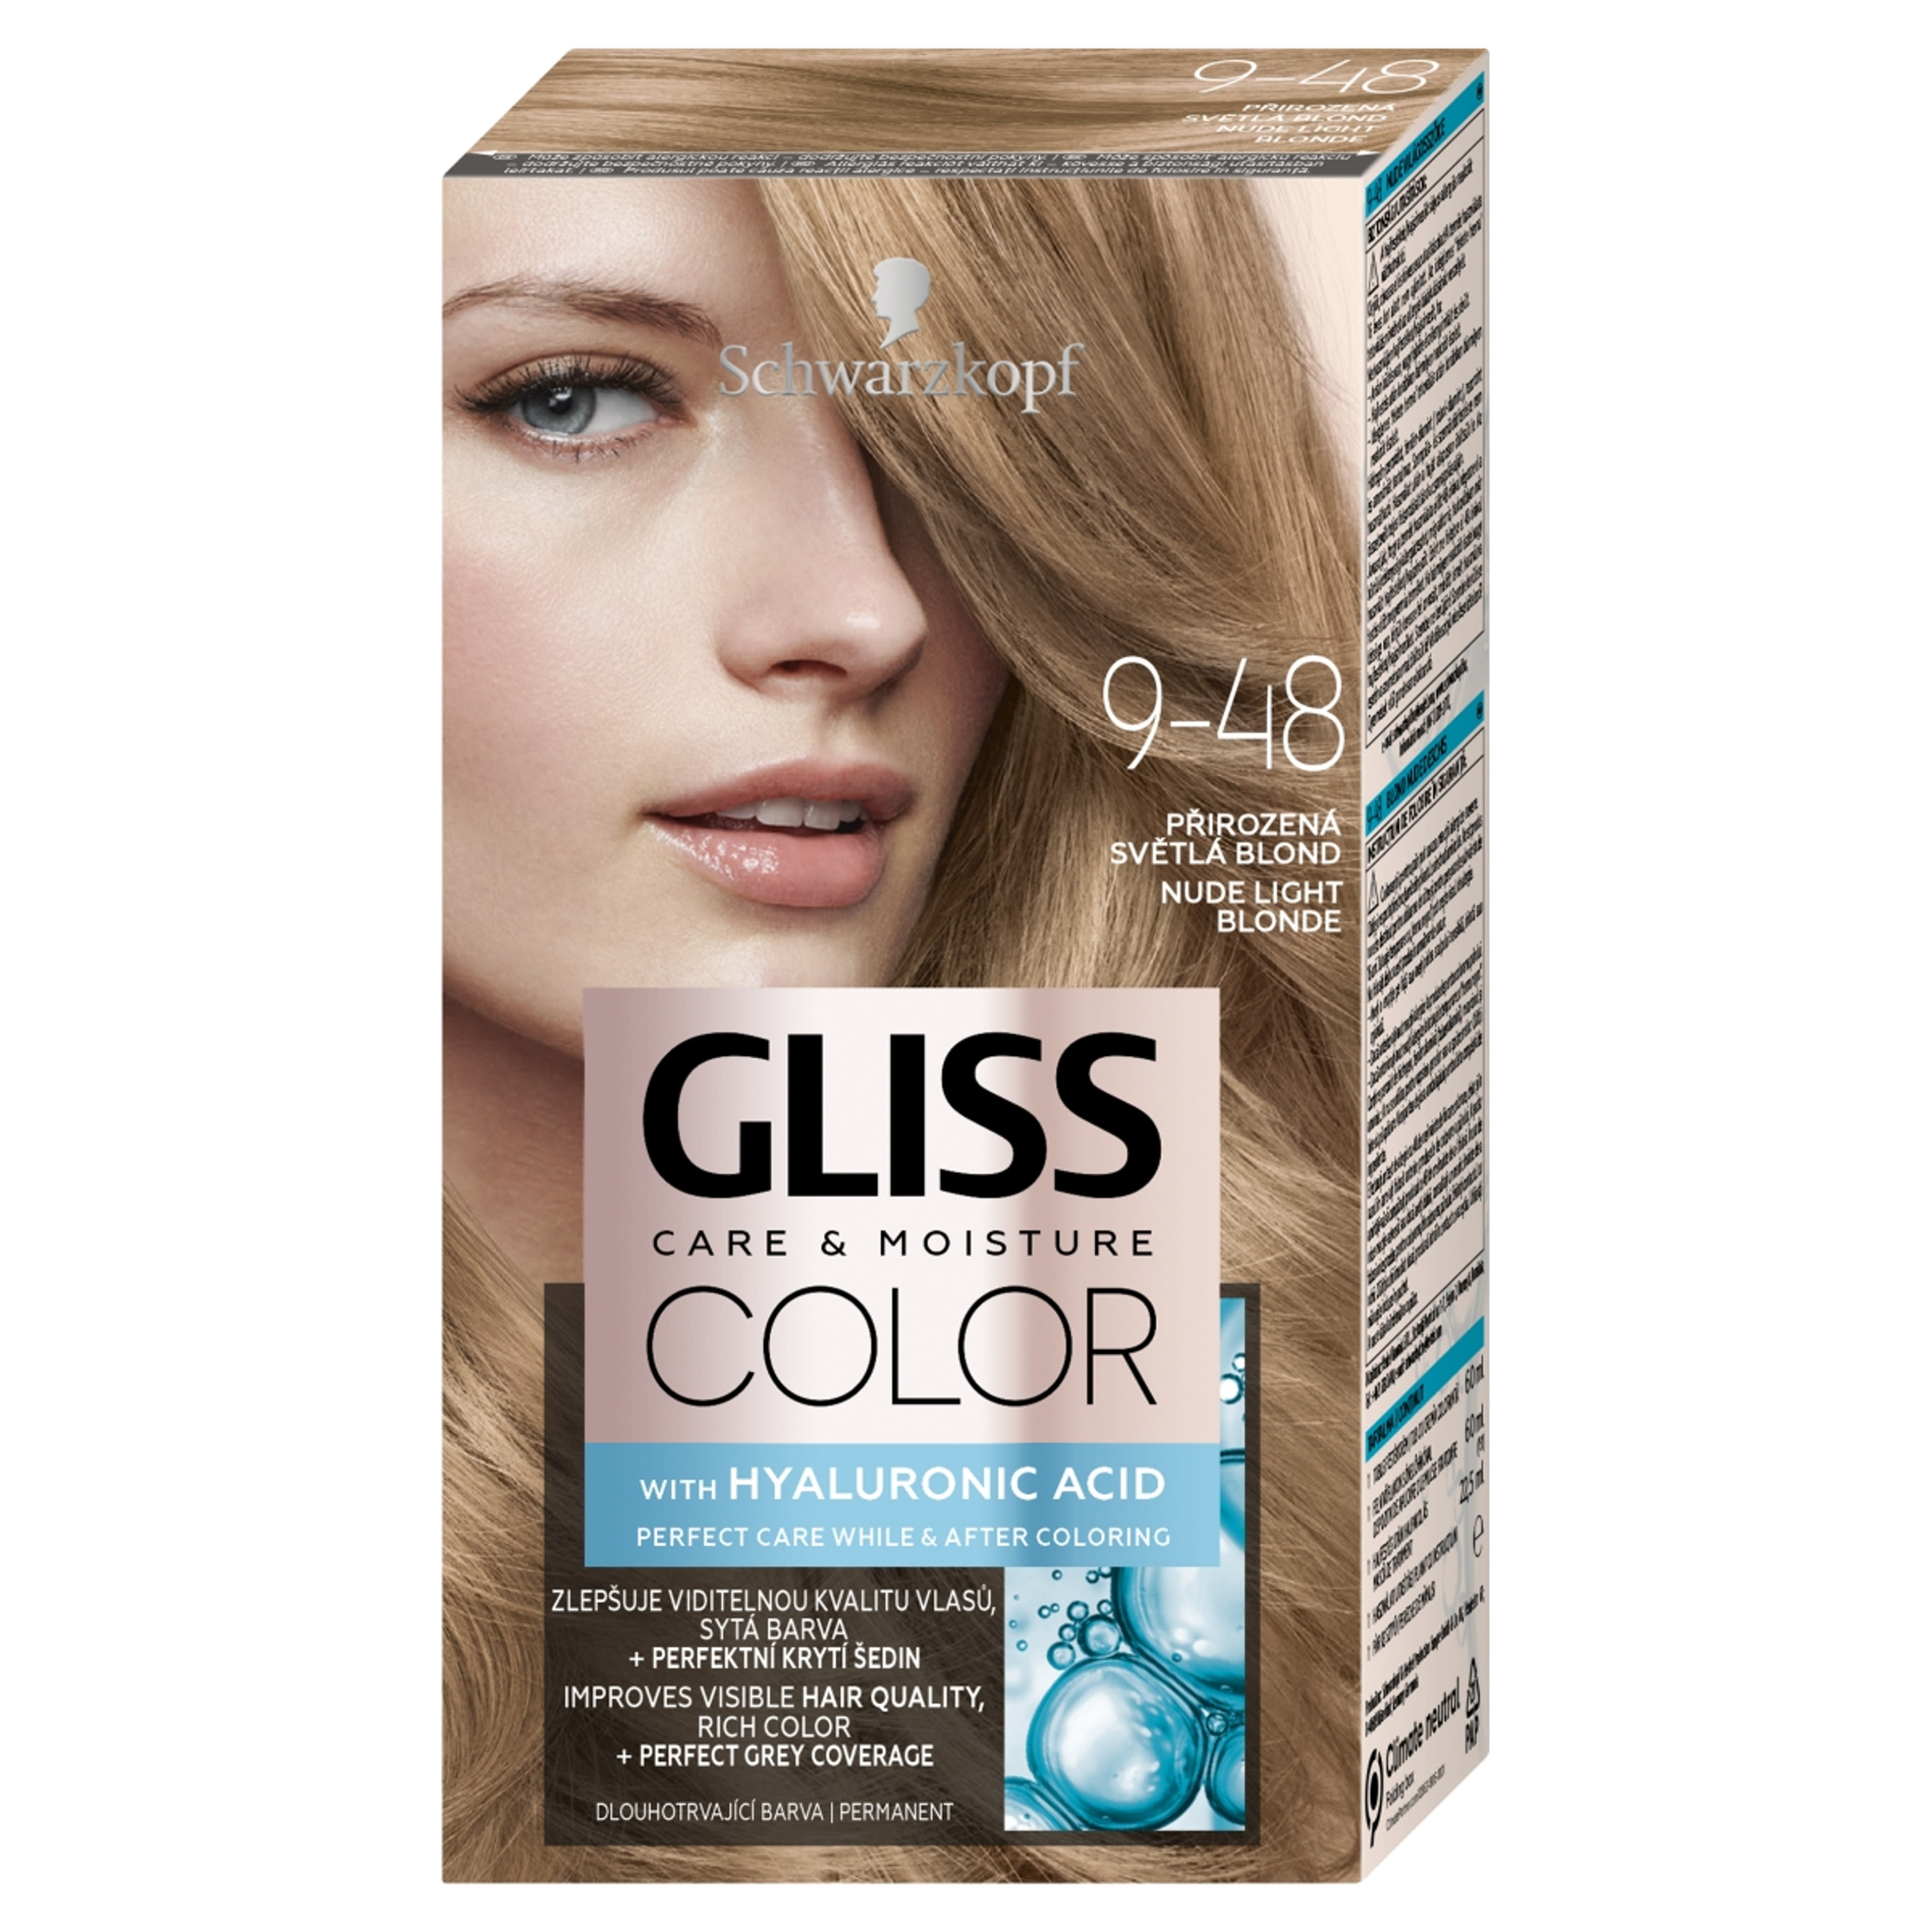 Schwarzkopf Gliss Color tartós hajfesték 9-48 természetes világosszőke - 1 db